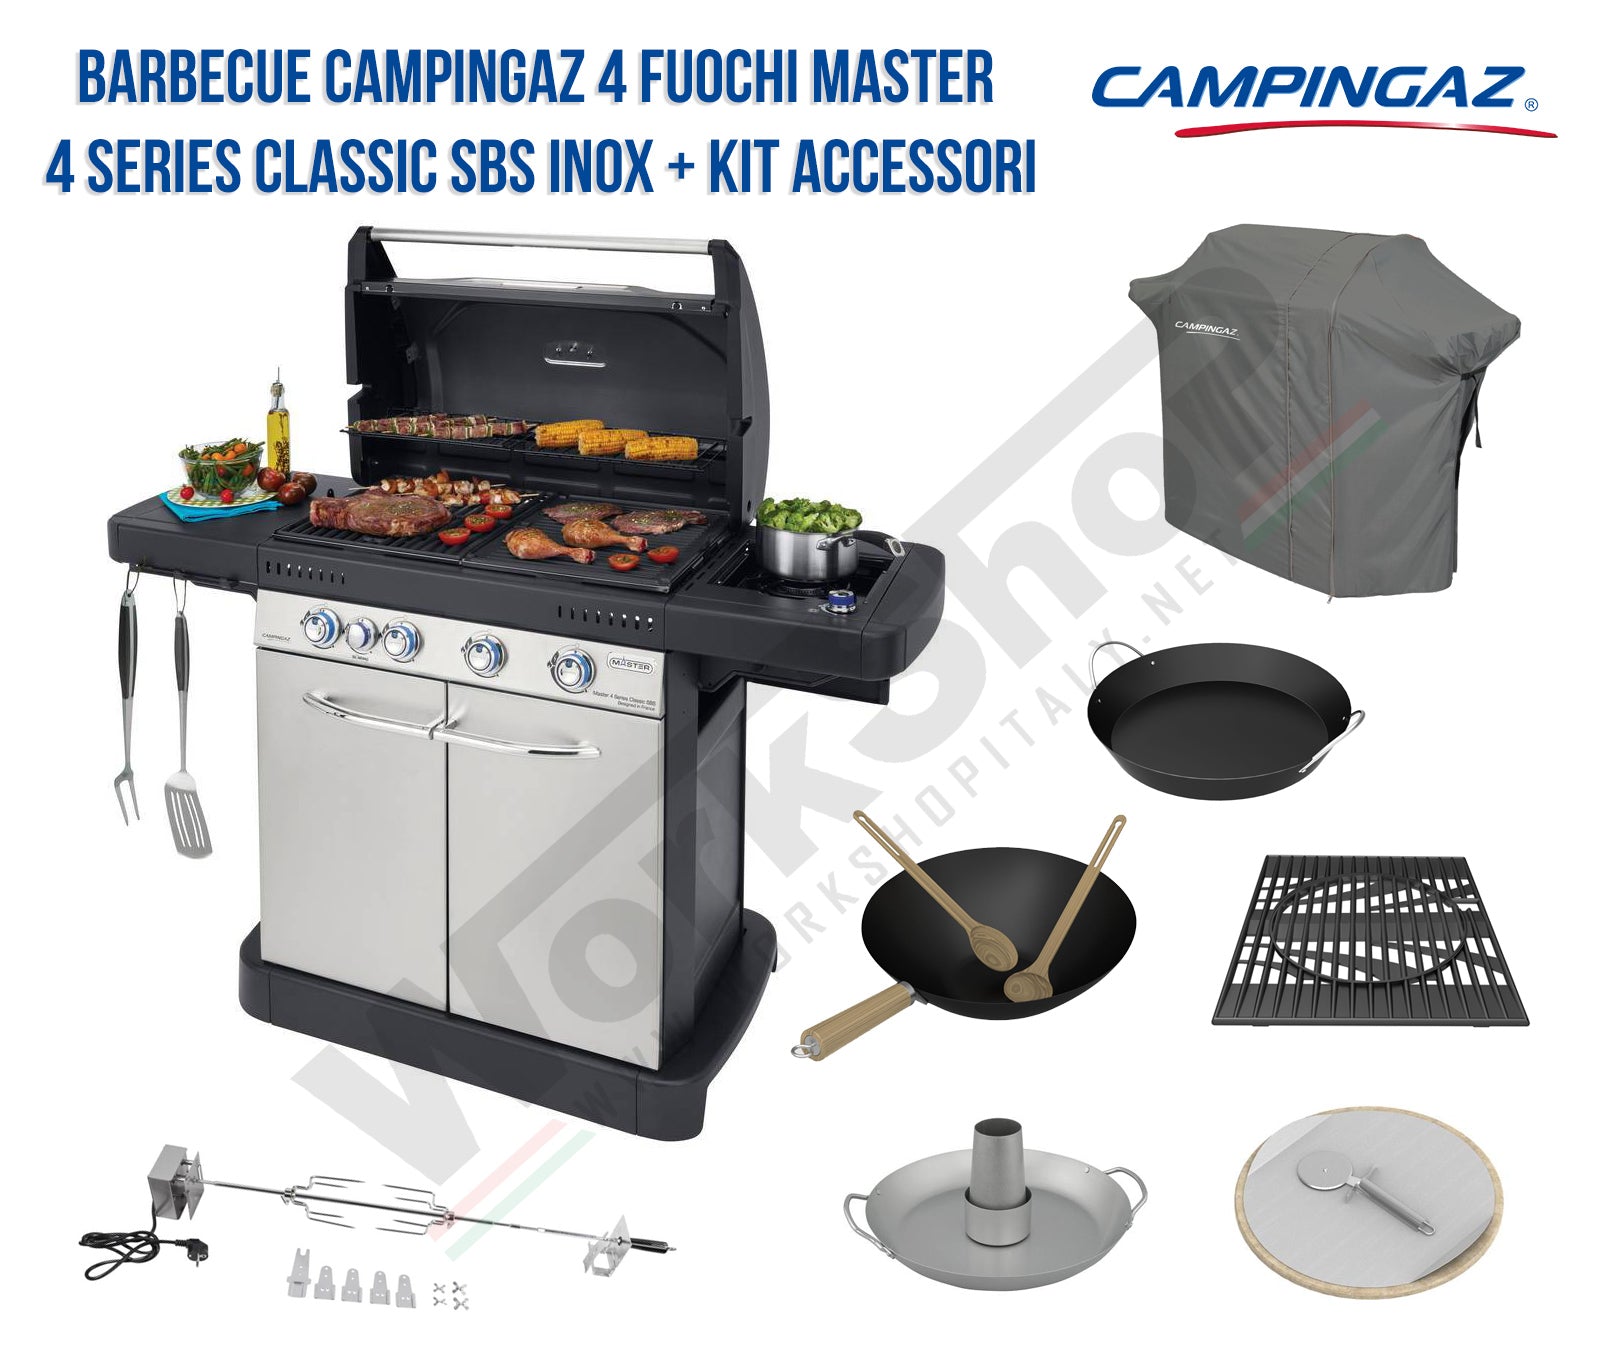 Barbecue Campingaz 4 Fuochi Master 4 Series Classic SBS INOX Master Kit 5 accessori